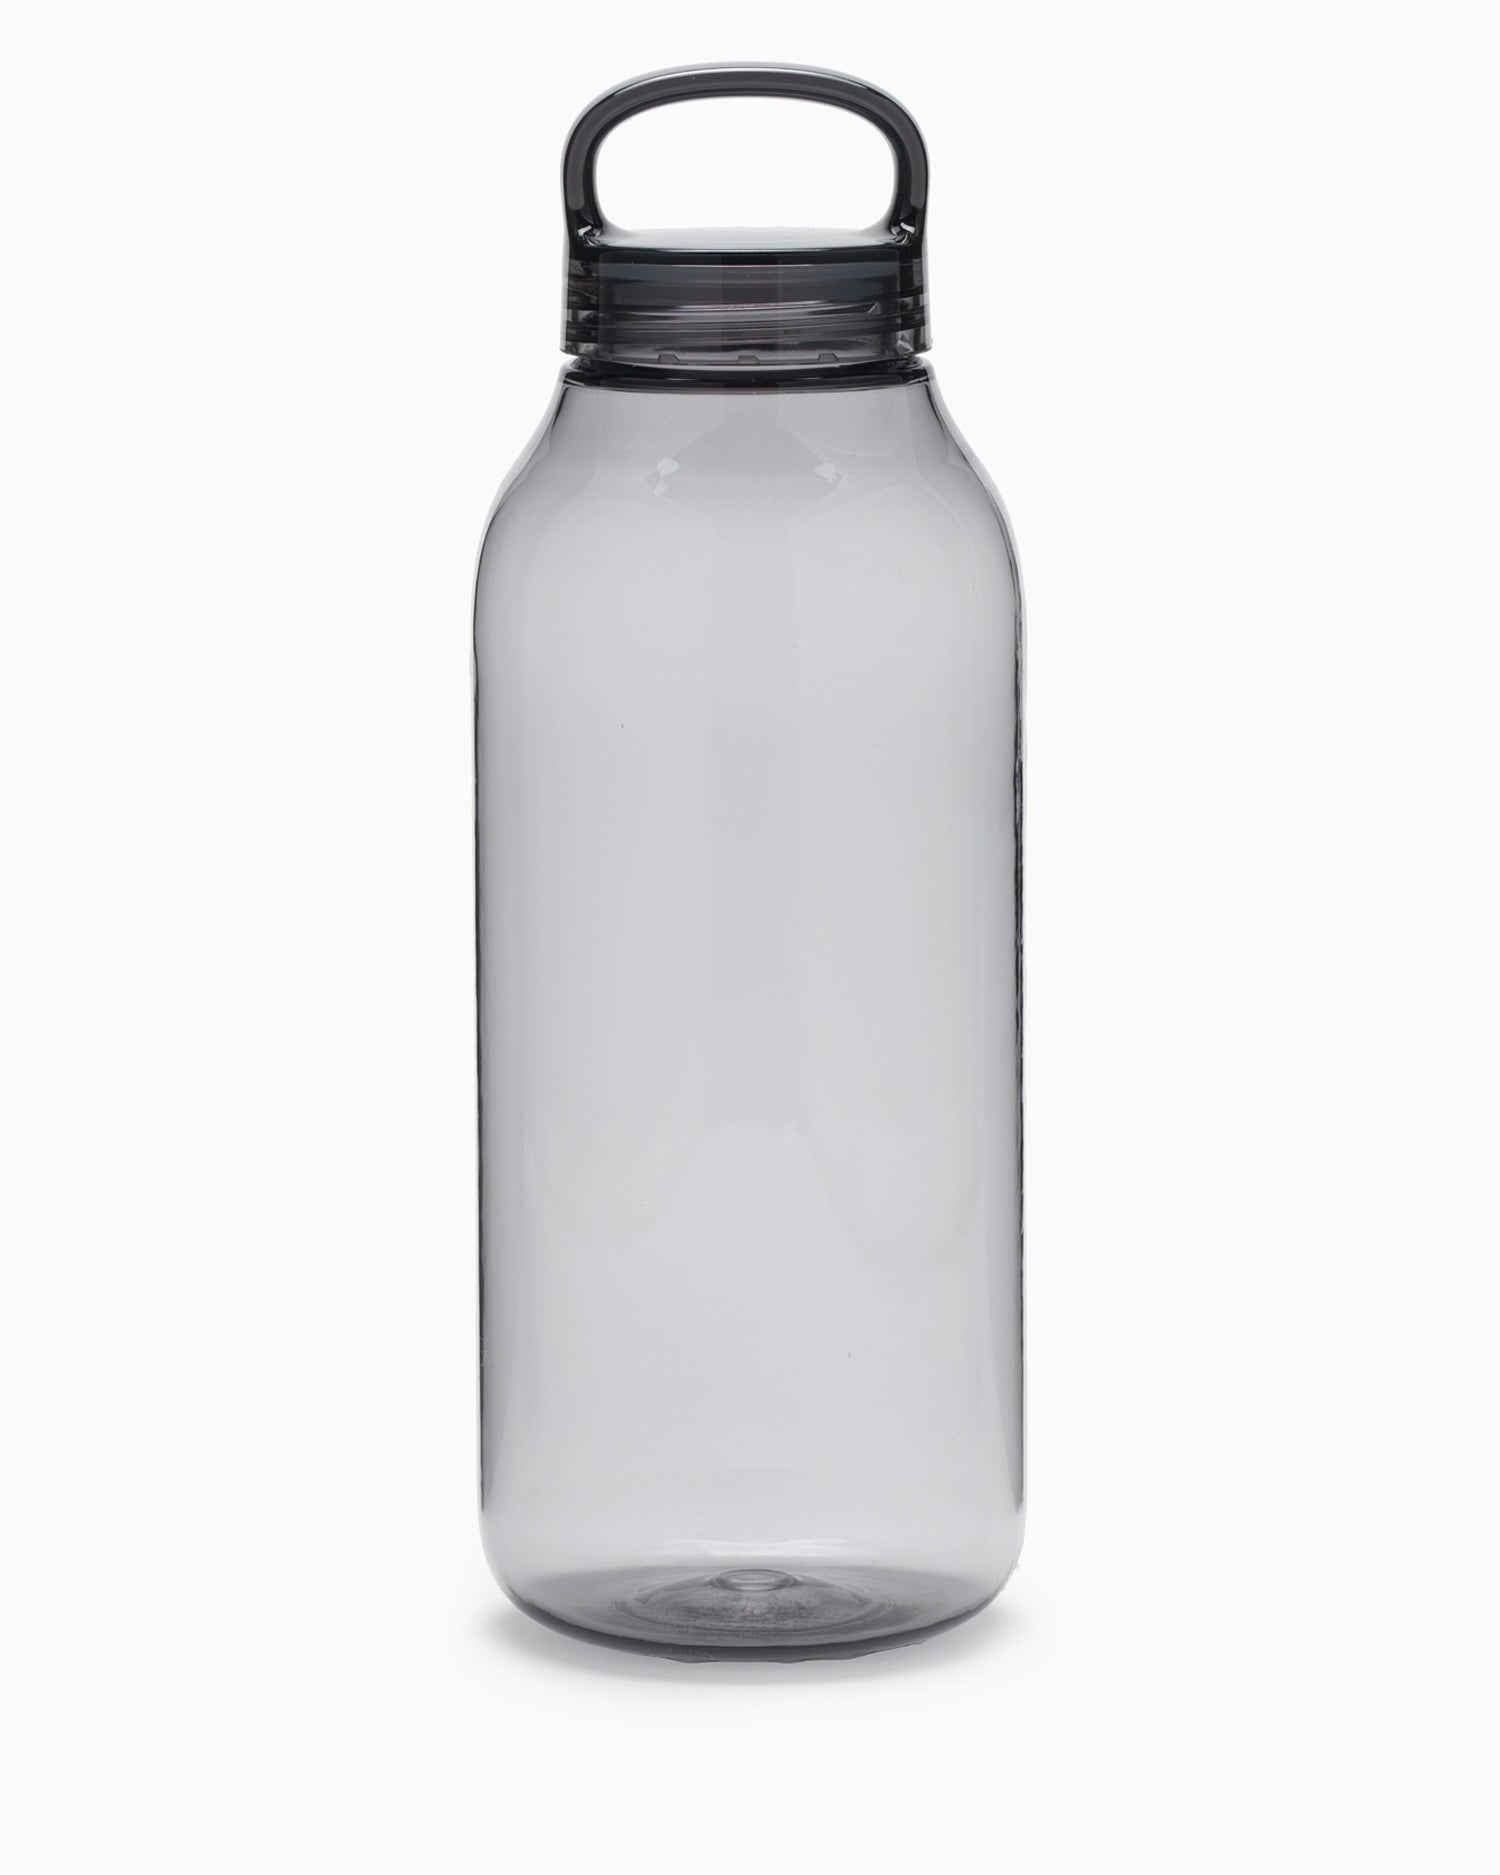 Water Bottle 950ml - Smoke